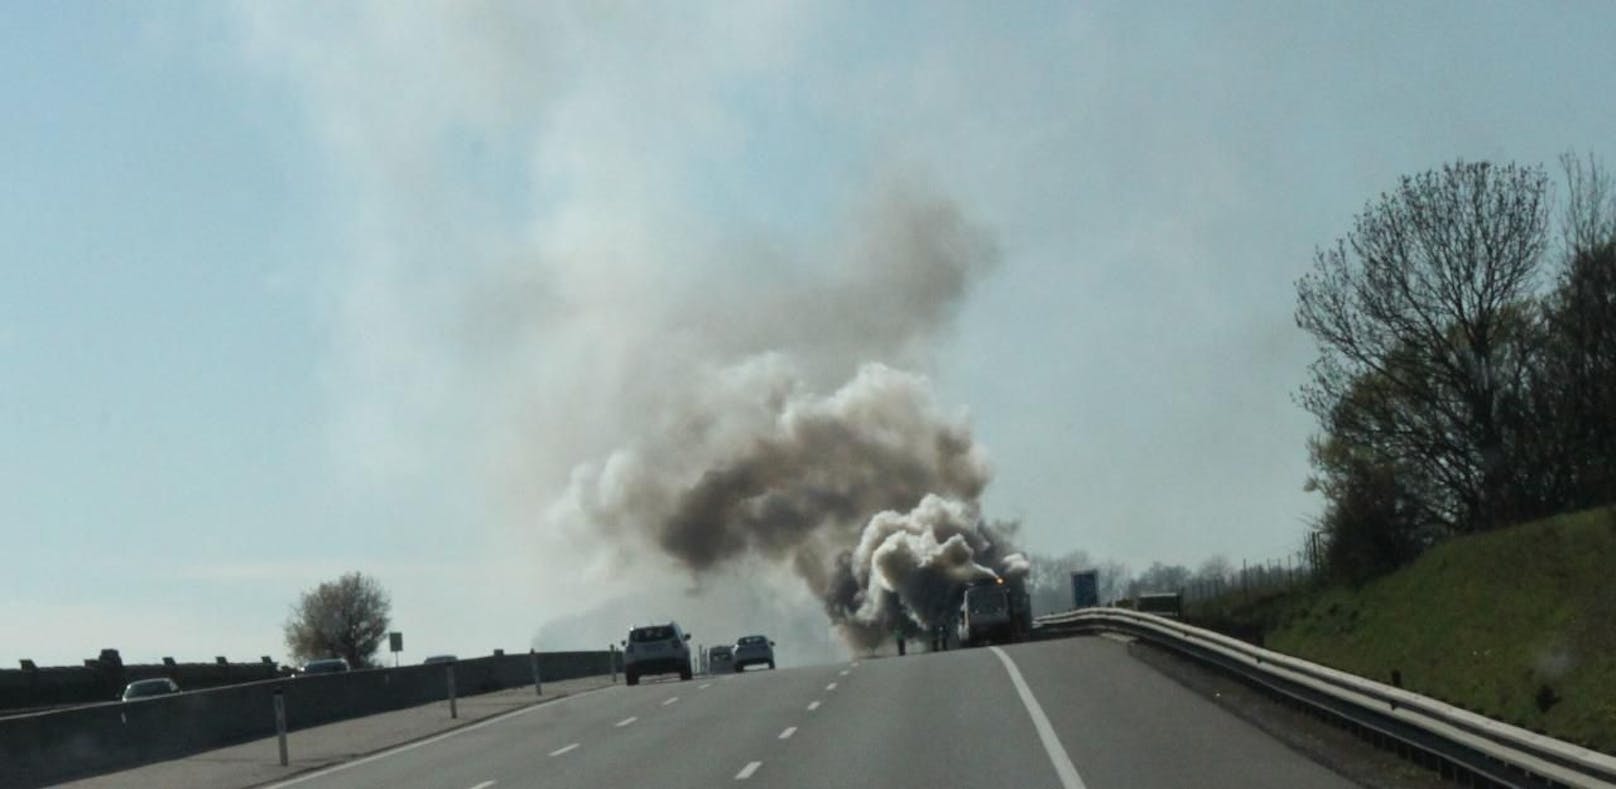 Rauchsäule auf der A1: SUV brannte völlig aus